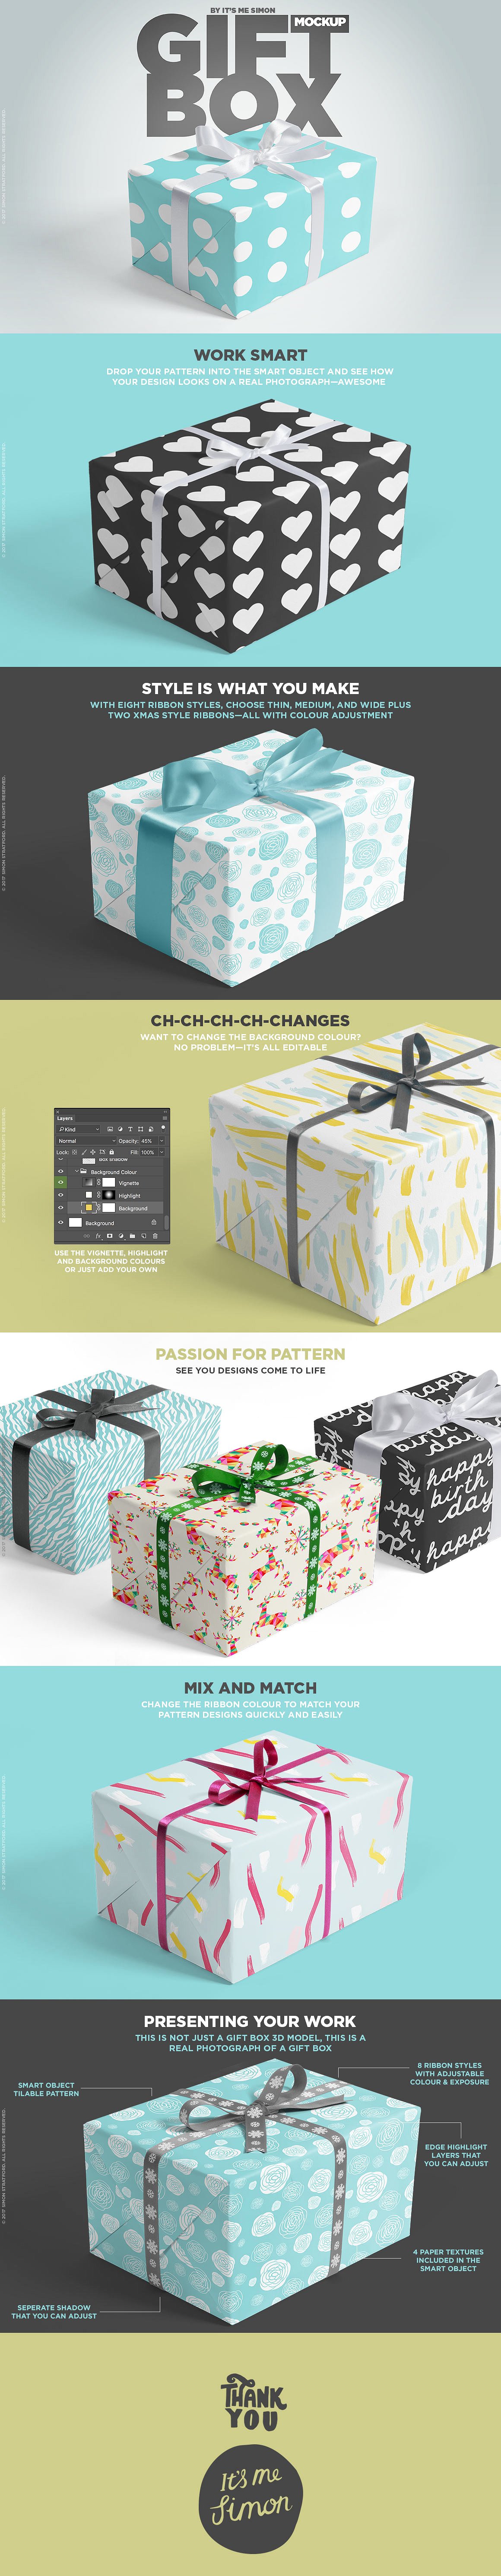 精美礼品盒包装盒样机PSD模版 Gift box mocku